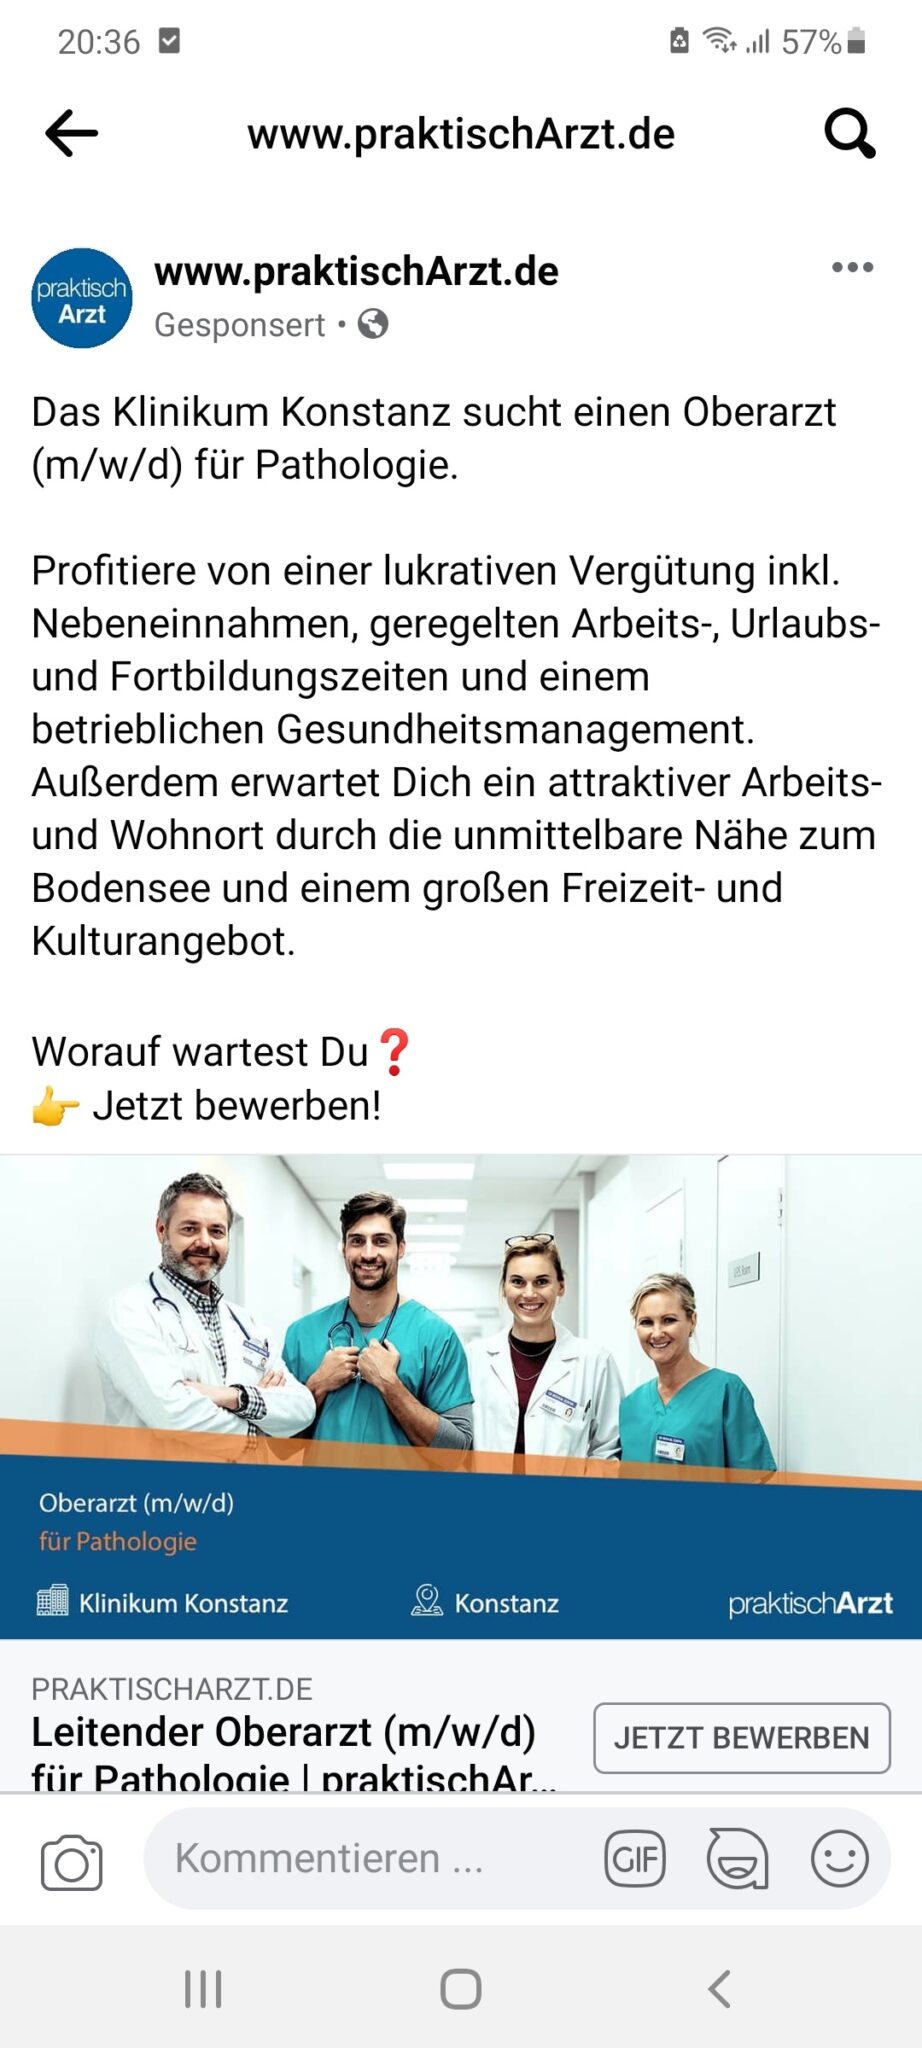 Ärzte rekrutieren via praktischarzt.de